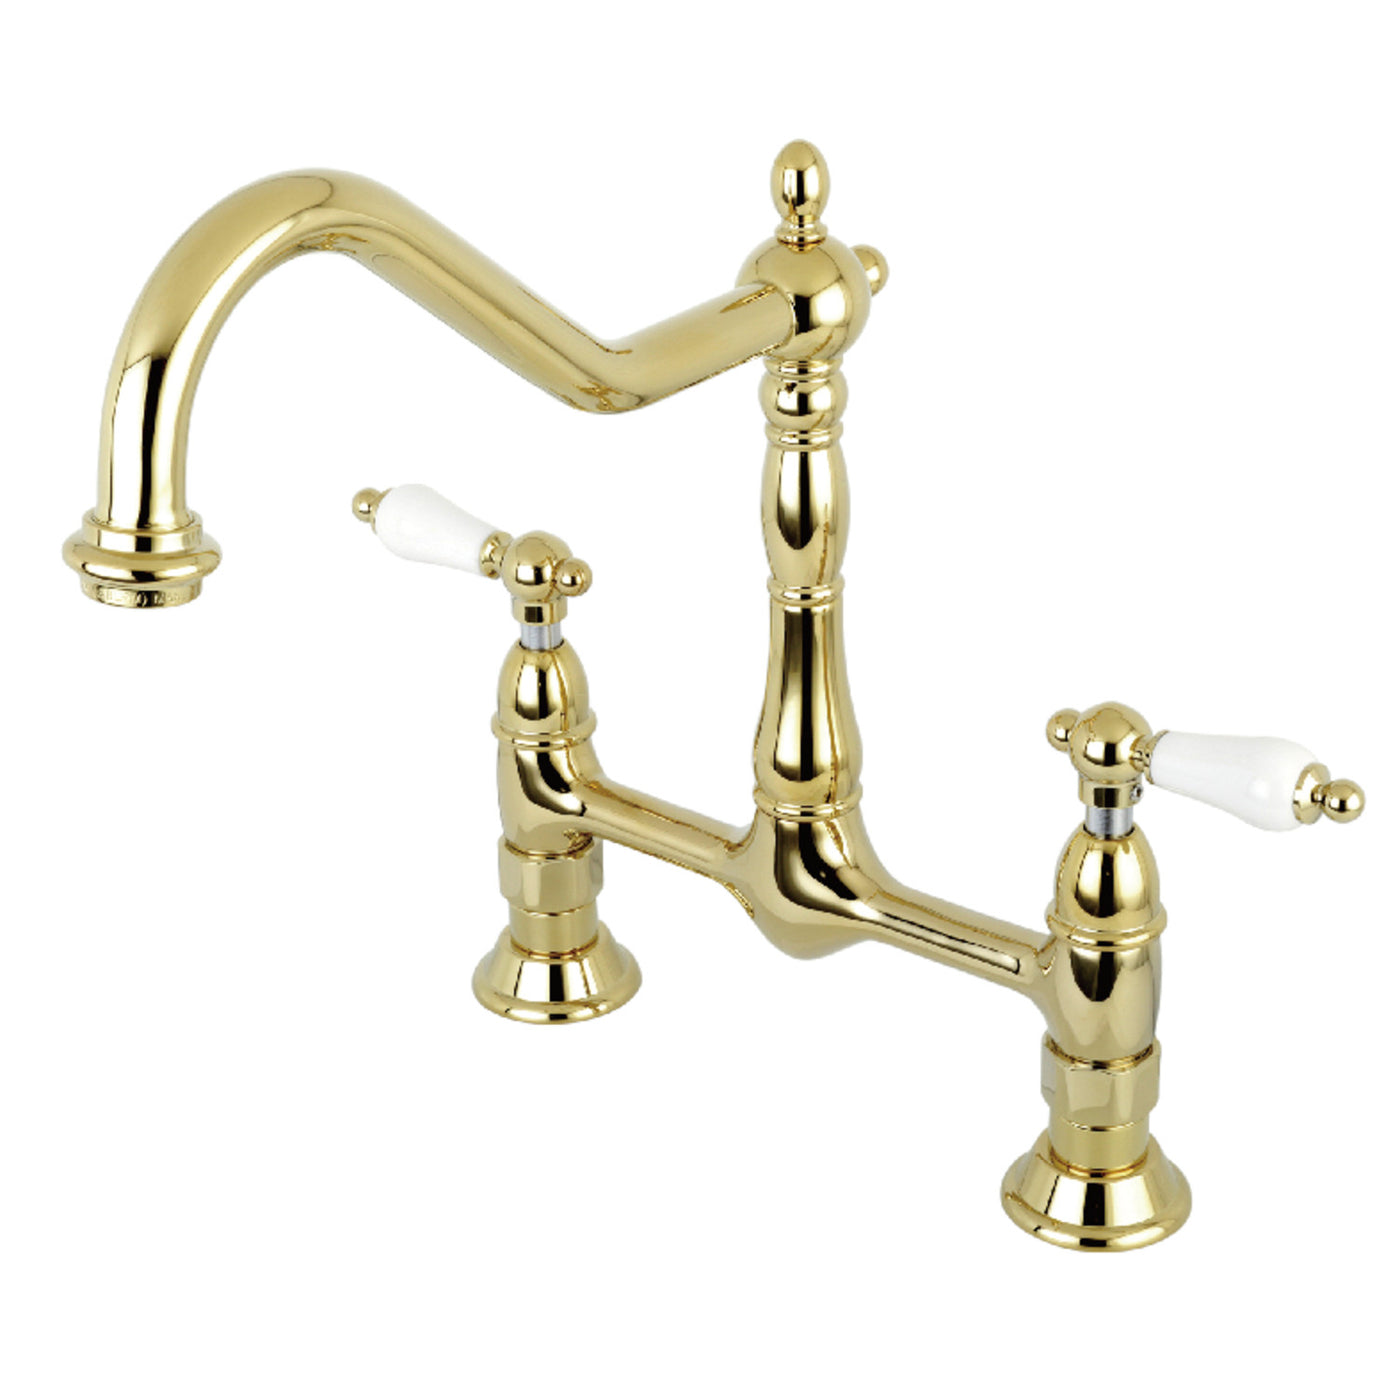 Elements of Design ES1172PL Bridge Kitchen Faucet, Polished Brass